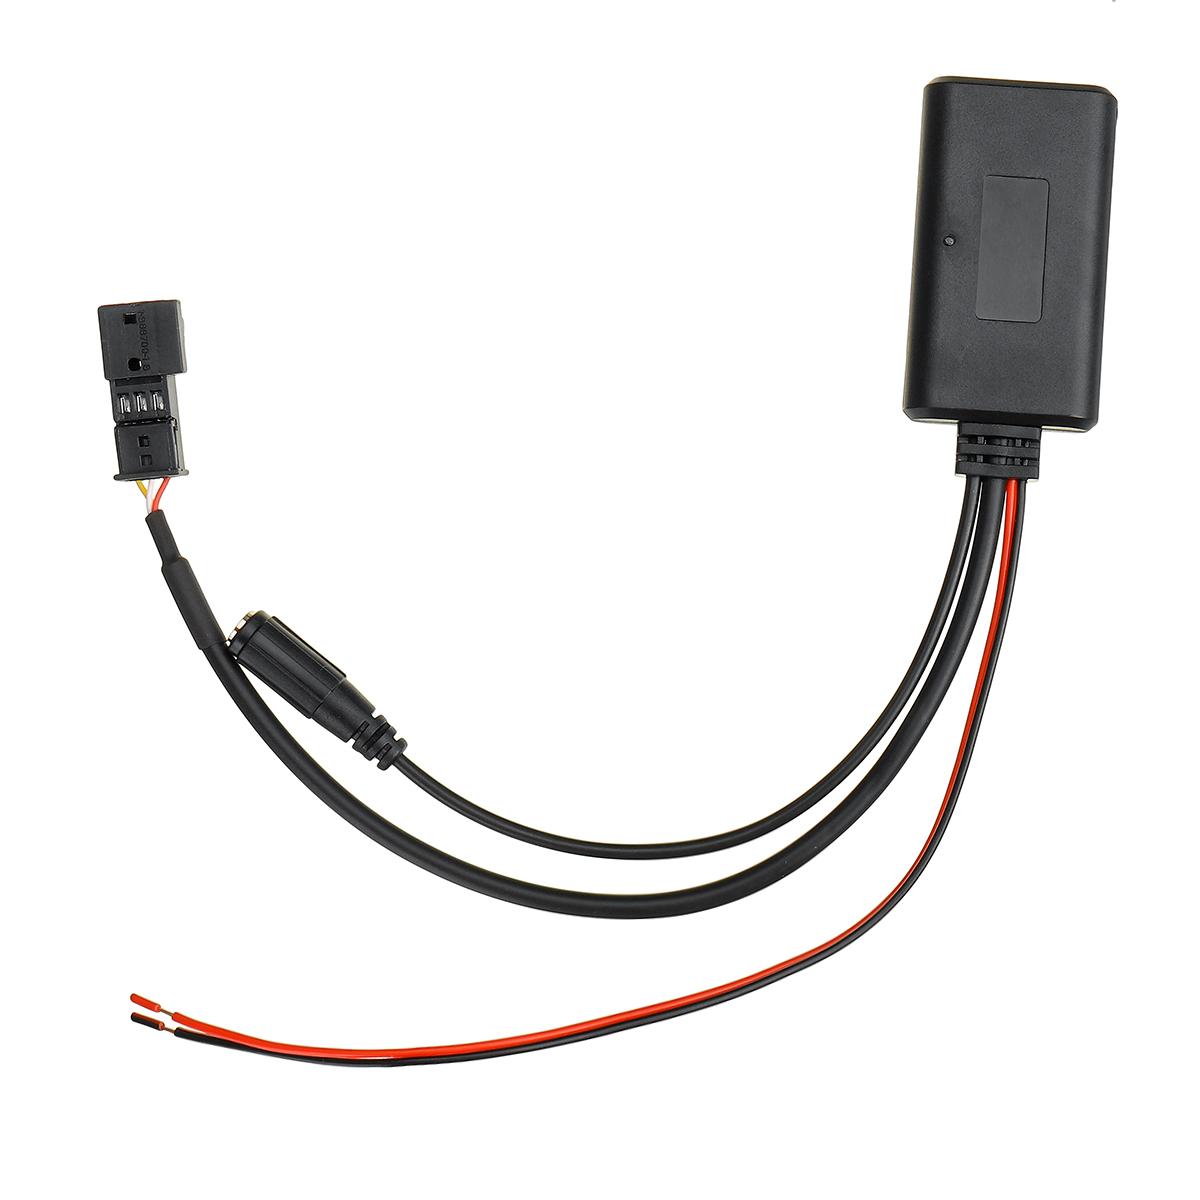 12V Car Audio bluetooth 5.0 HIFI Cable Adaptor Microphone For BMW E54 E39 E46 E38 E53 X5